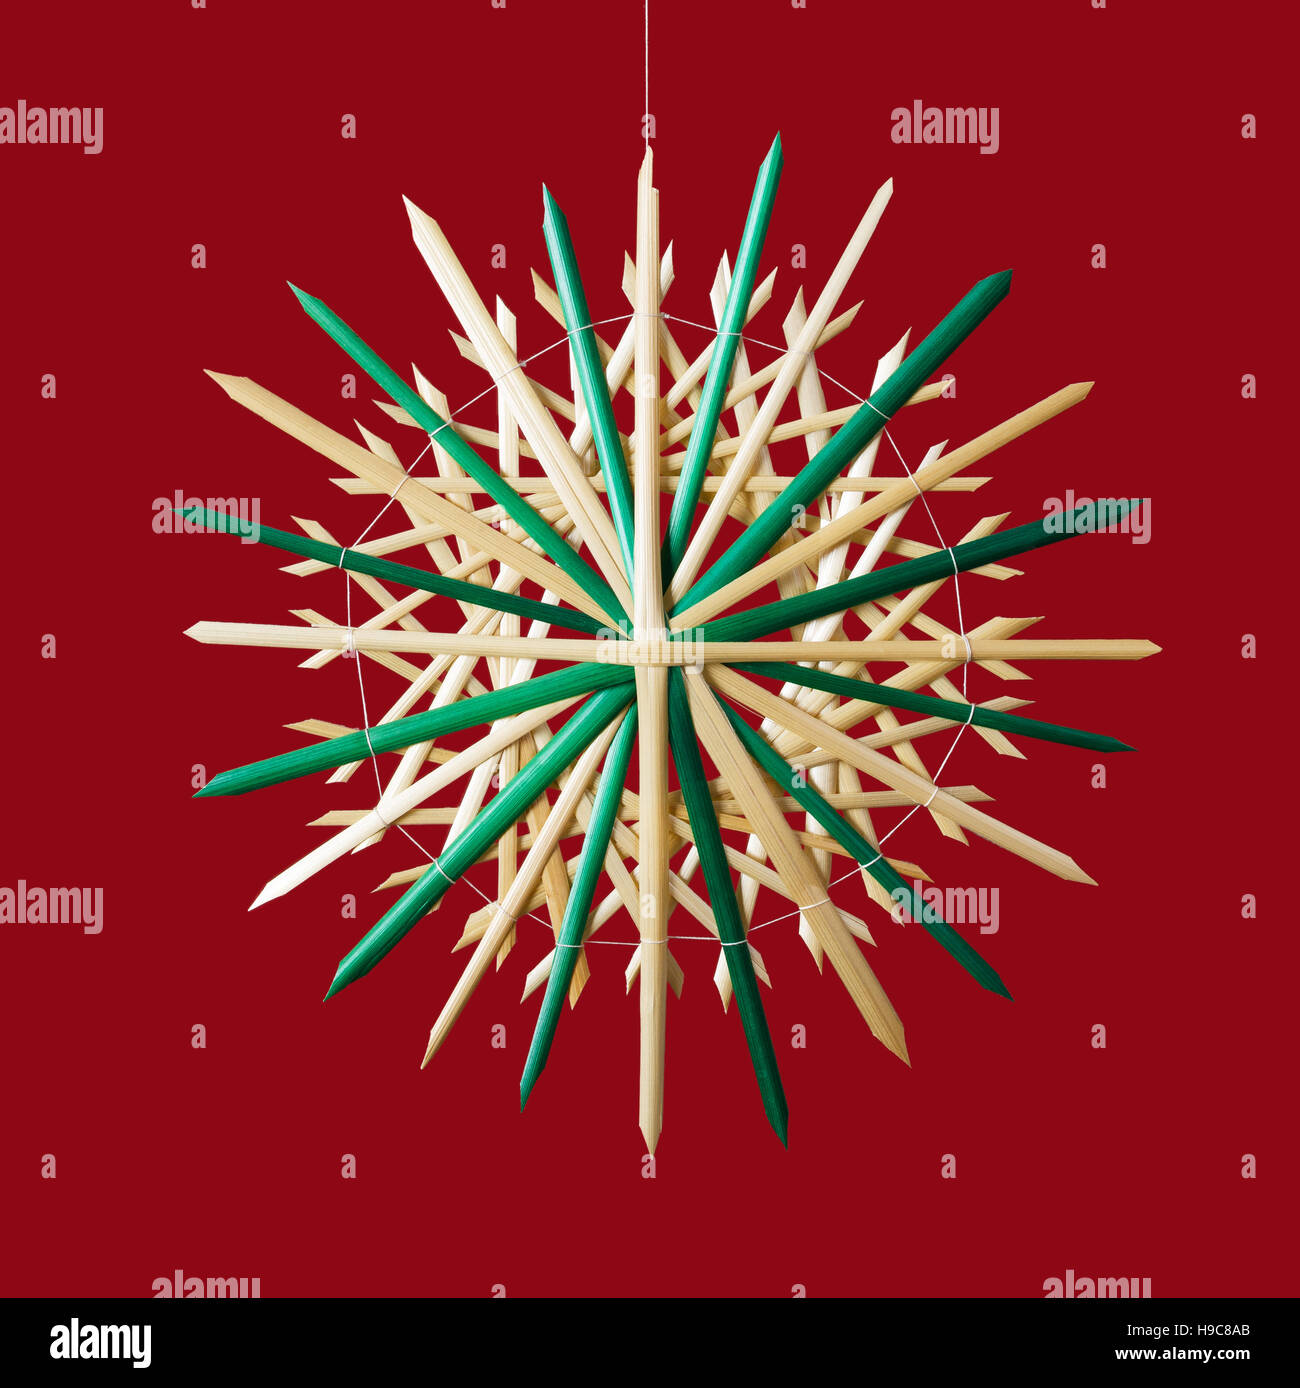 Stroh Weihnachtsdekoration Stern auf rotem Grund. Handgefertigte farbenfrohe Dekor für Windows, als Geschenk oder an den Weihnachtsbaum hängen. Stockfoto